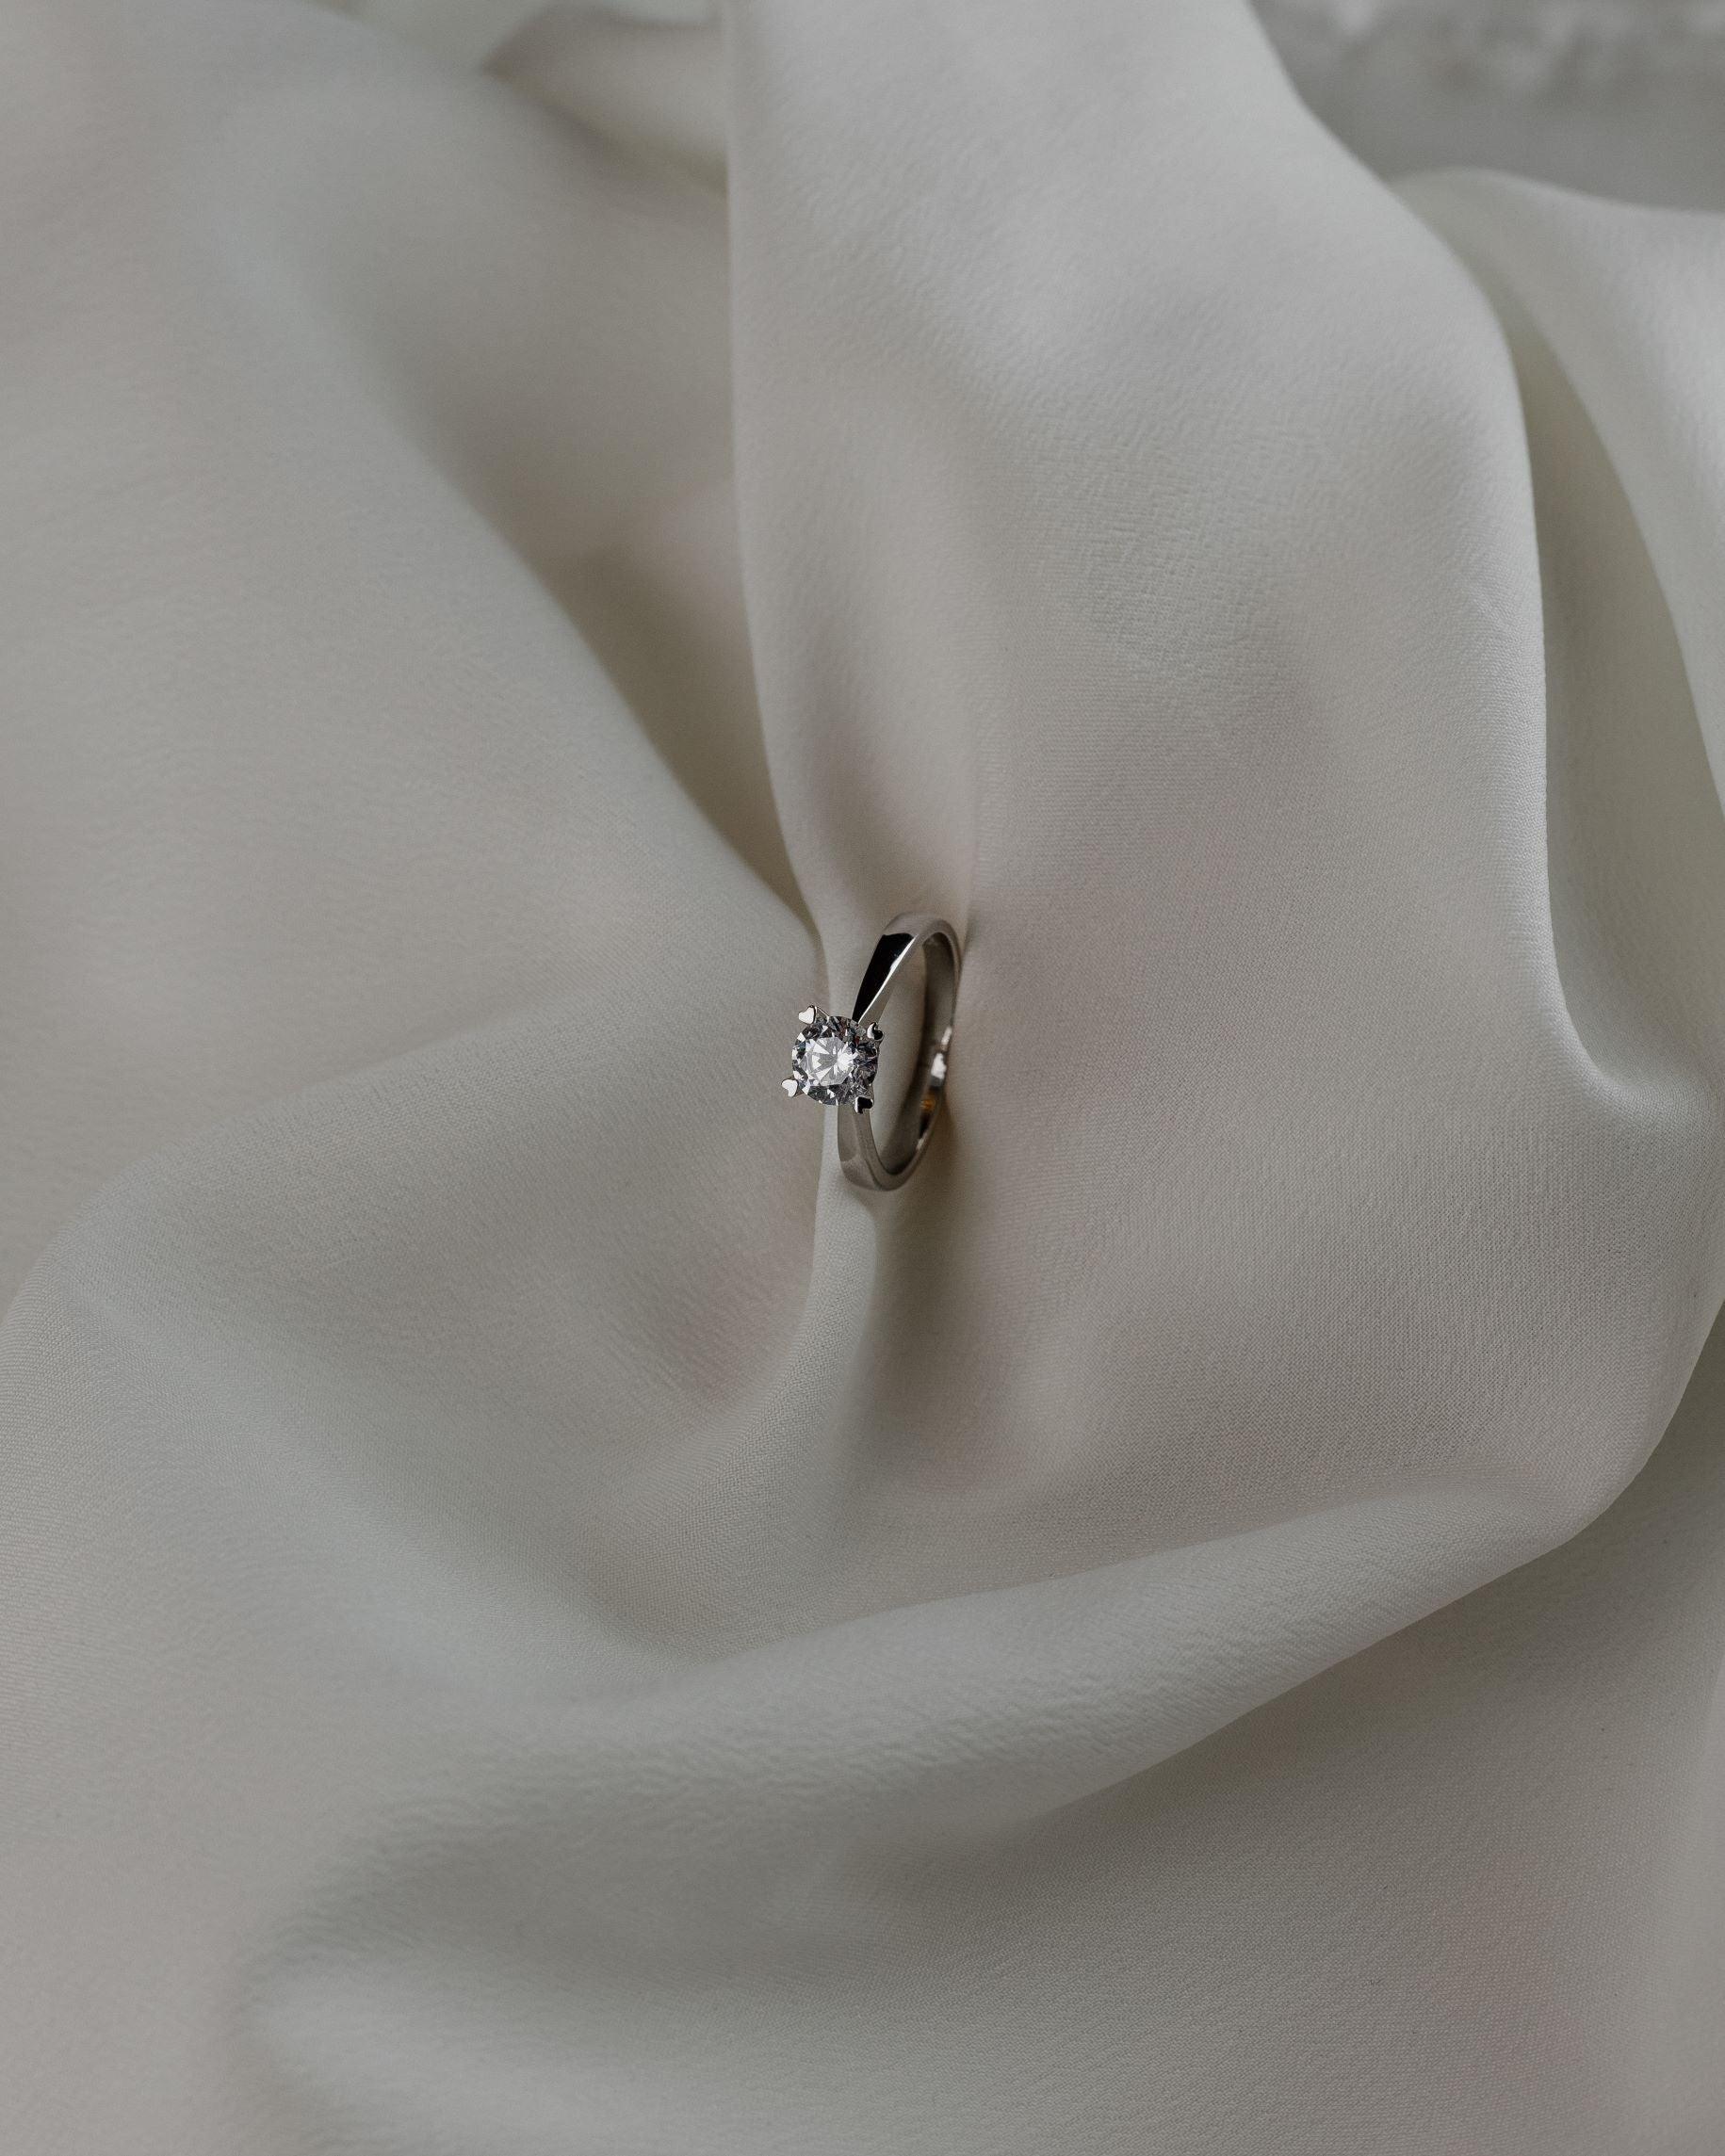 Λευκόχρυσο μονόπετρο με διαμάντι, με καστόνι σε σχήμα "V" και λεπτομέρειες σε σχήμα καρδιάς, επάνω σε λευκό μετάξι.